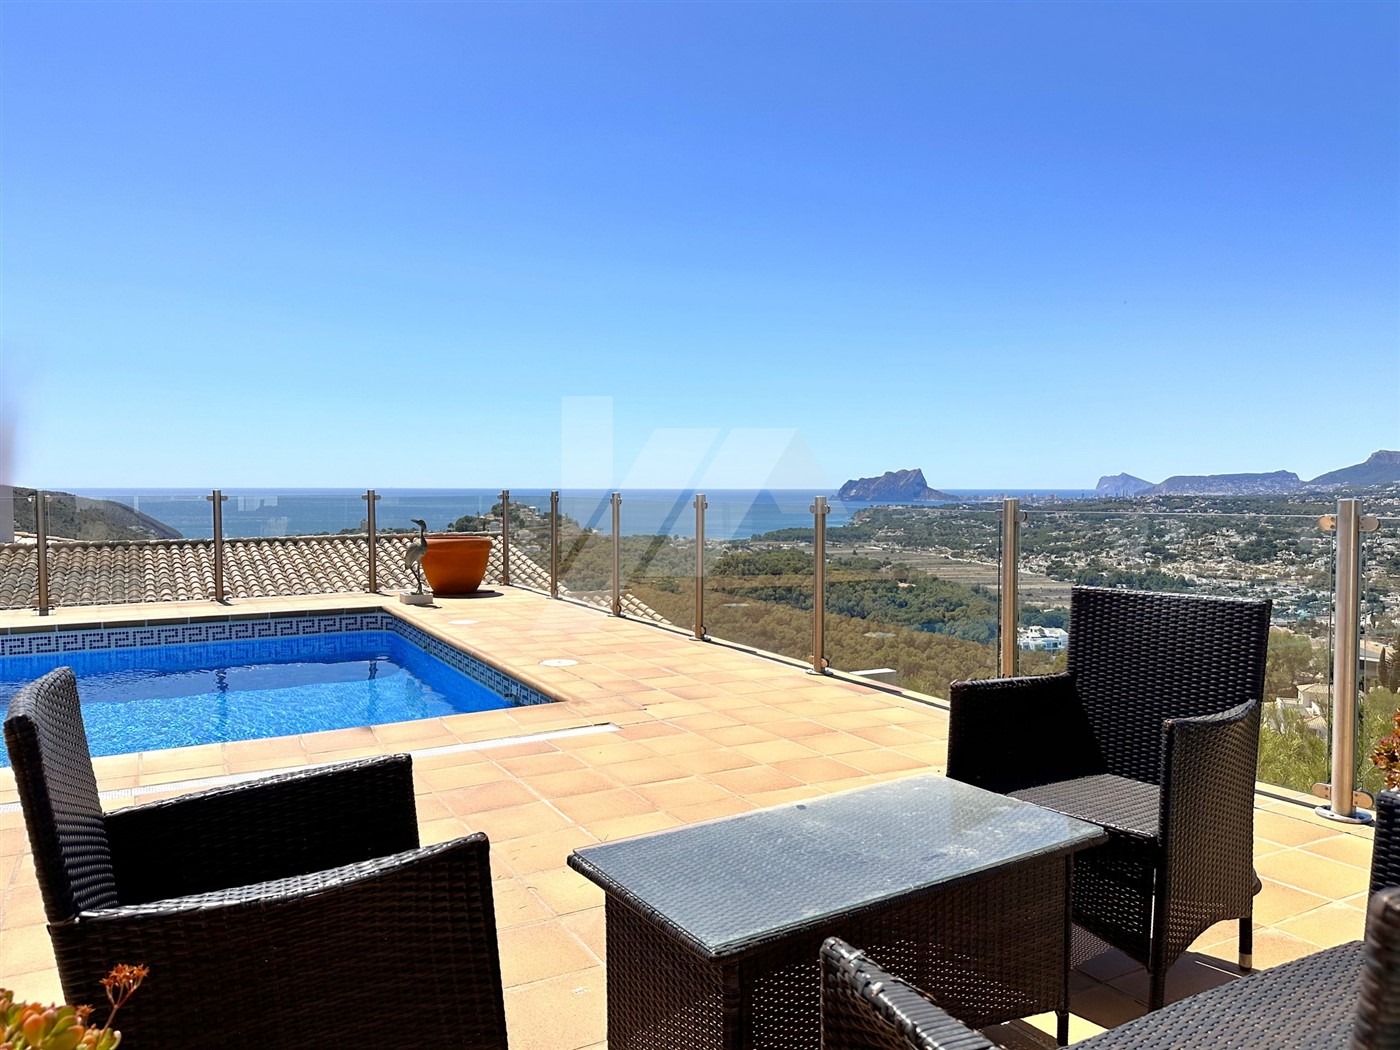 Uitzonderlijke villa te koop met uitzicht op zee in Moraira.